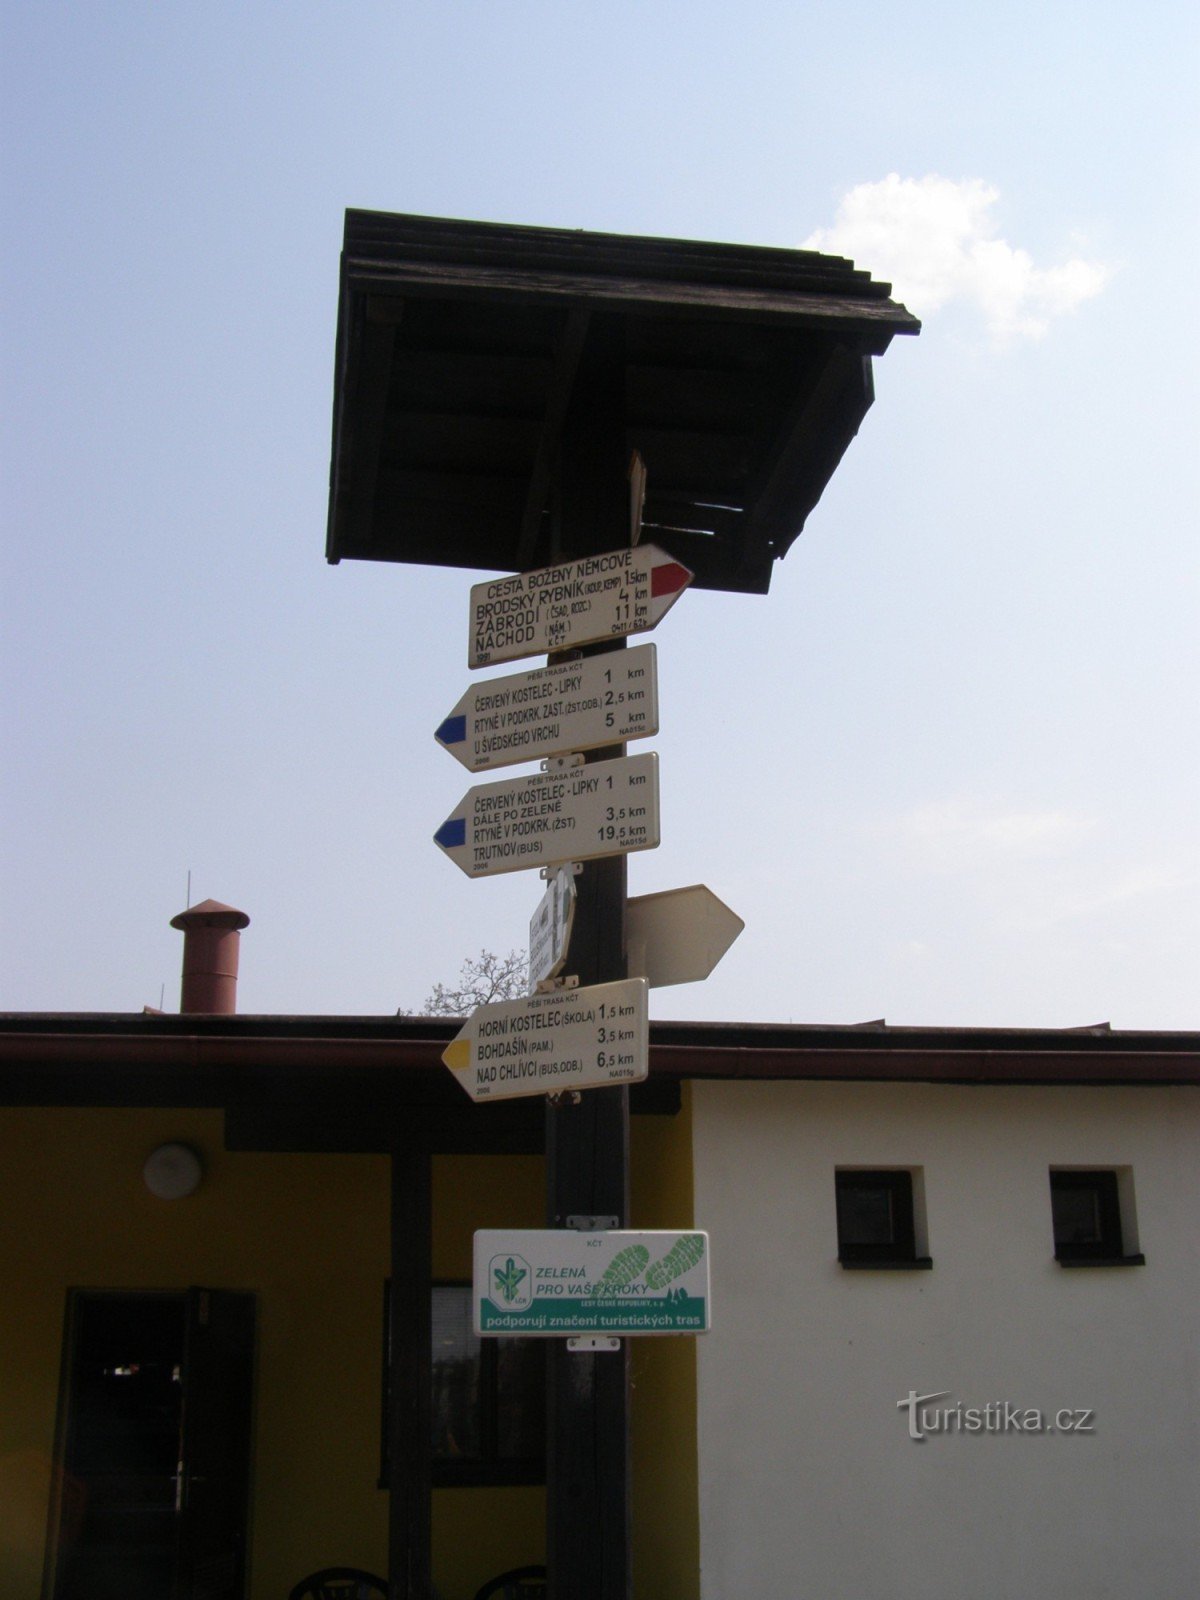 τουριστικό σταυροδρόμι Červený Kostelec - σταθμός λεωφορείων